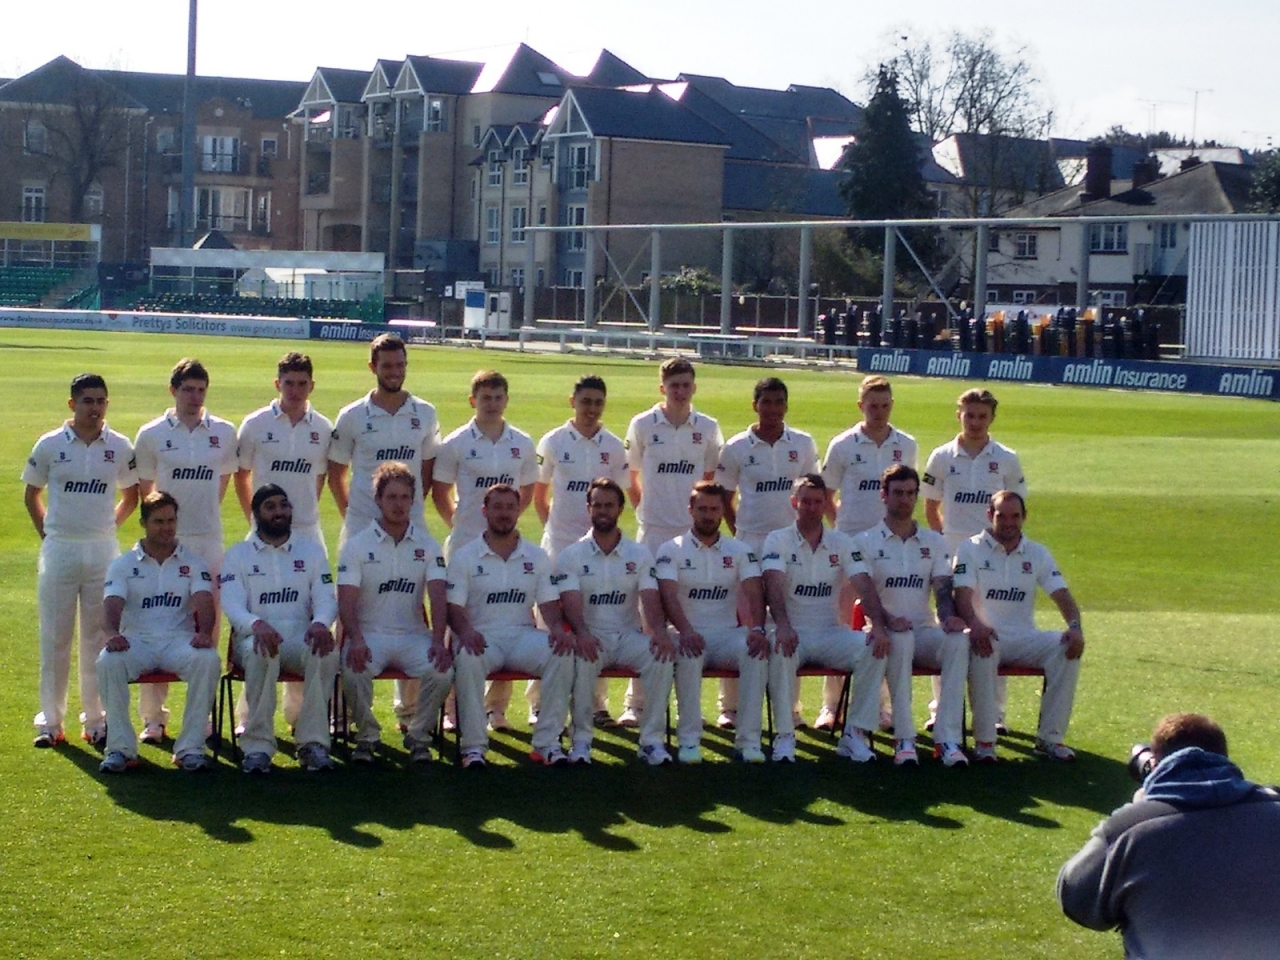 Essex Cricket Team for 1280 x 960 resolution